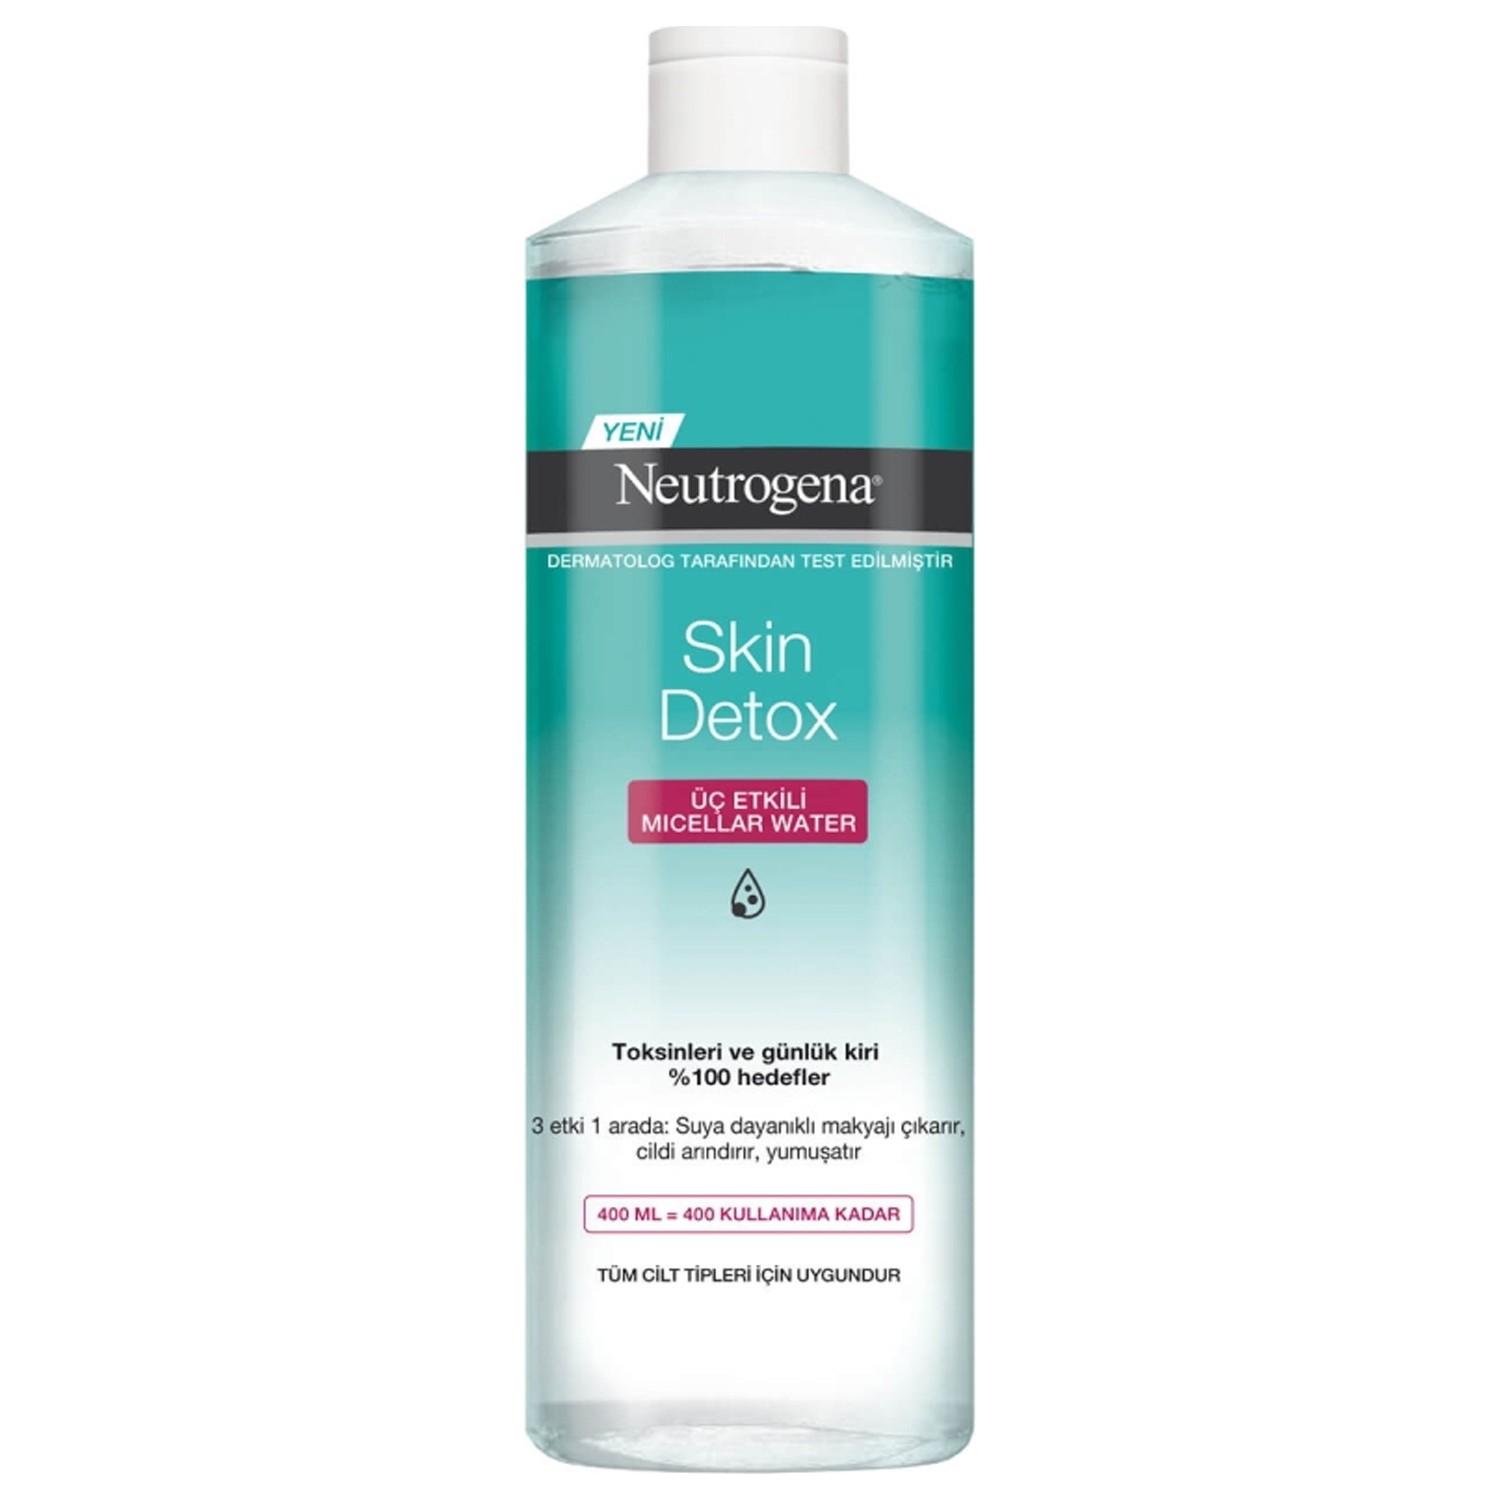 Мицеллярная вода Neutrogena Skin Detox Tip для снятия макияжа, 400 мл